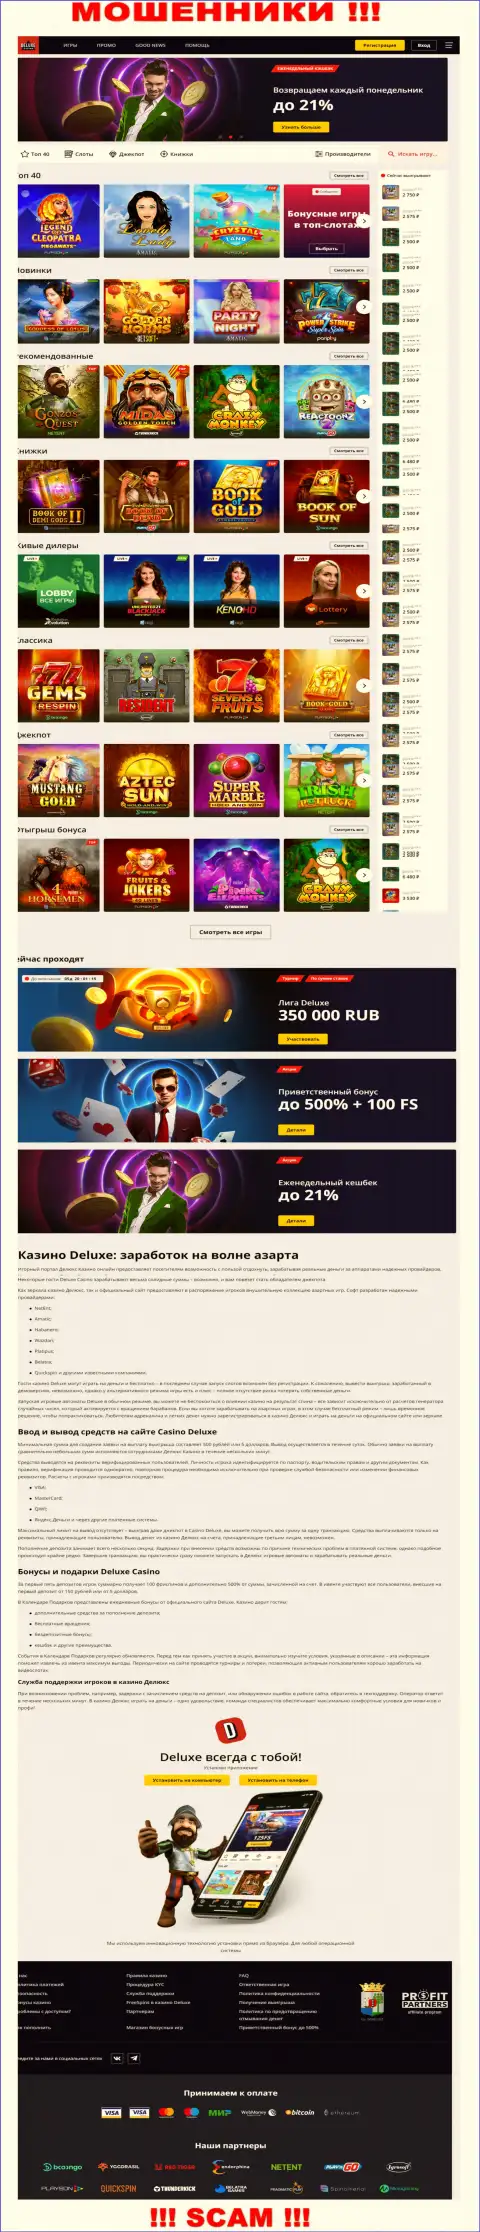 Официальная internet-страница организации Deluxe-Casino Com